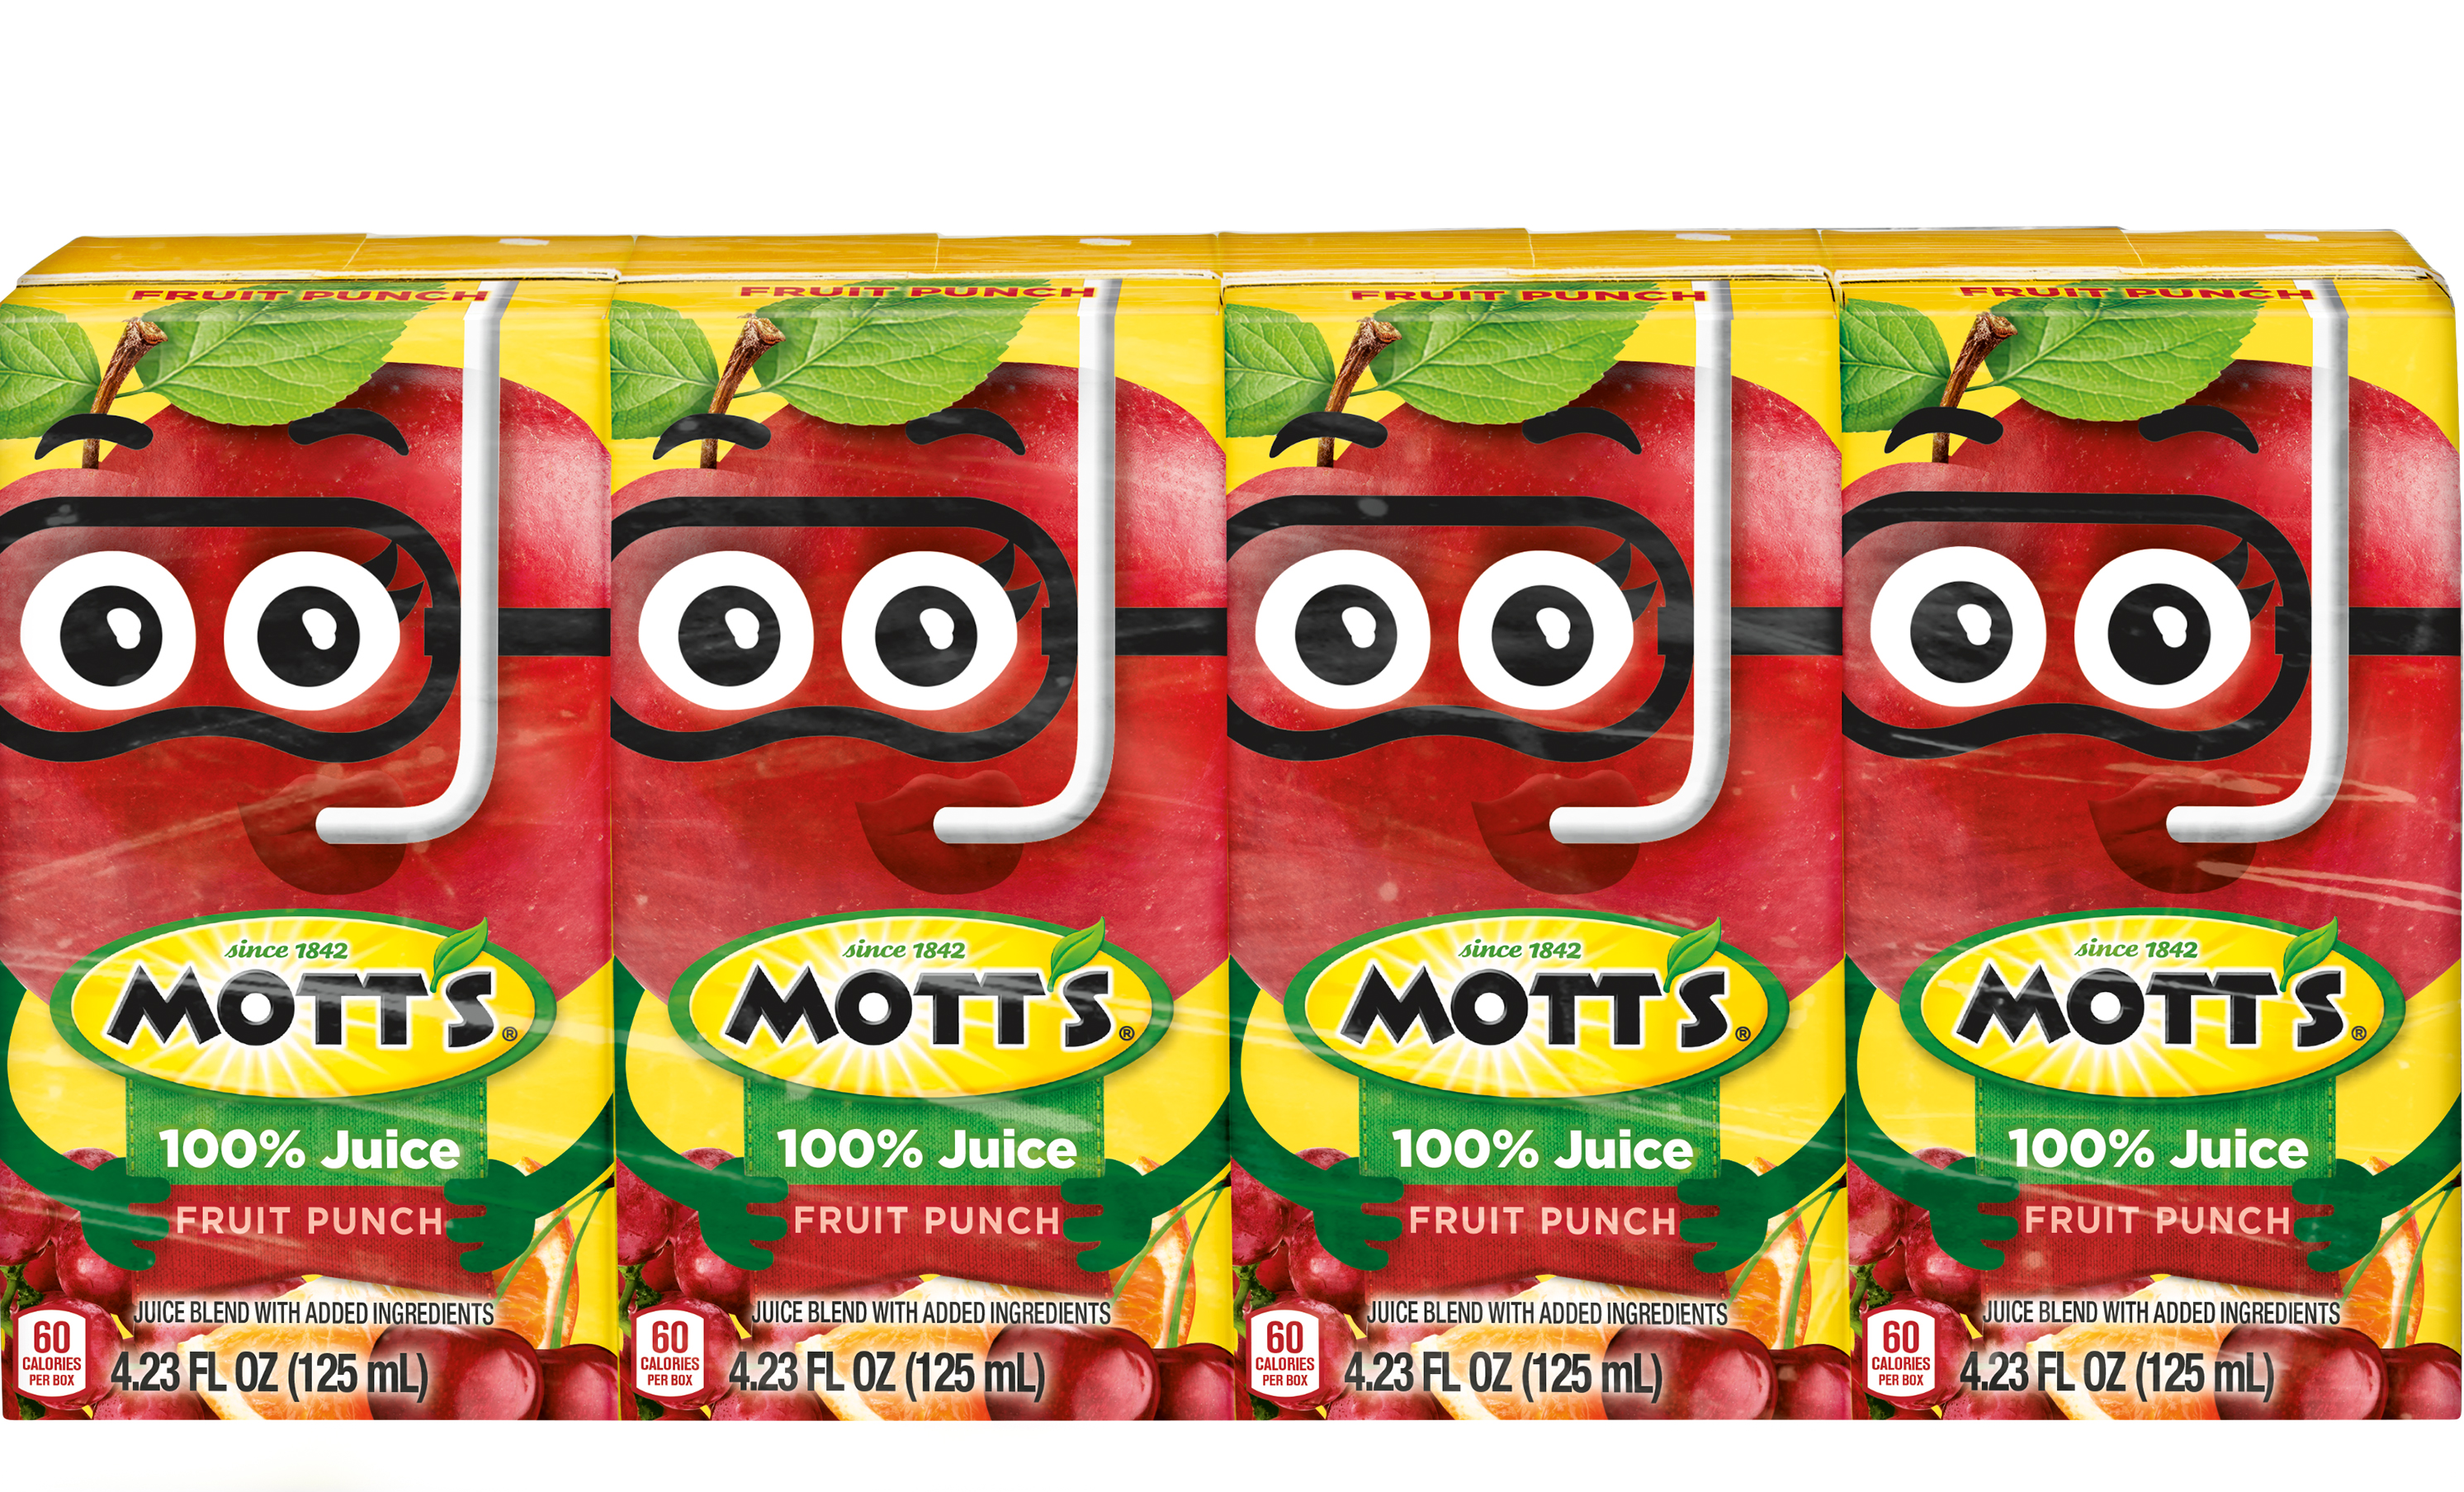 Mott's® 100% Fruit Punch Juice 4.23 oz. 4-pack juice boxes